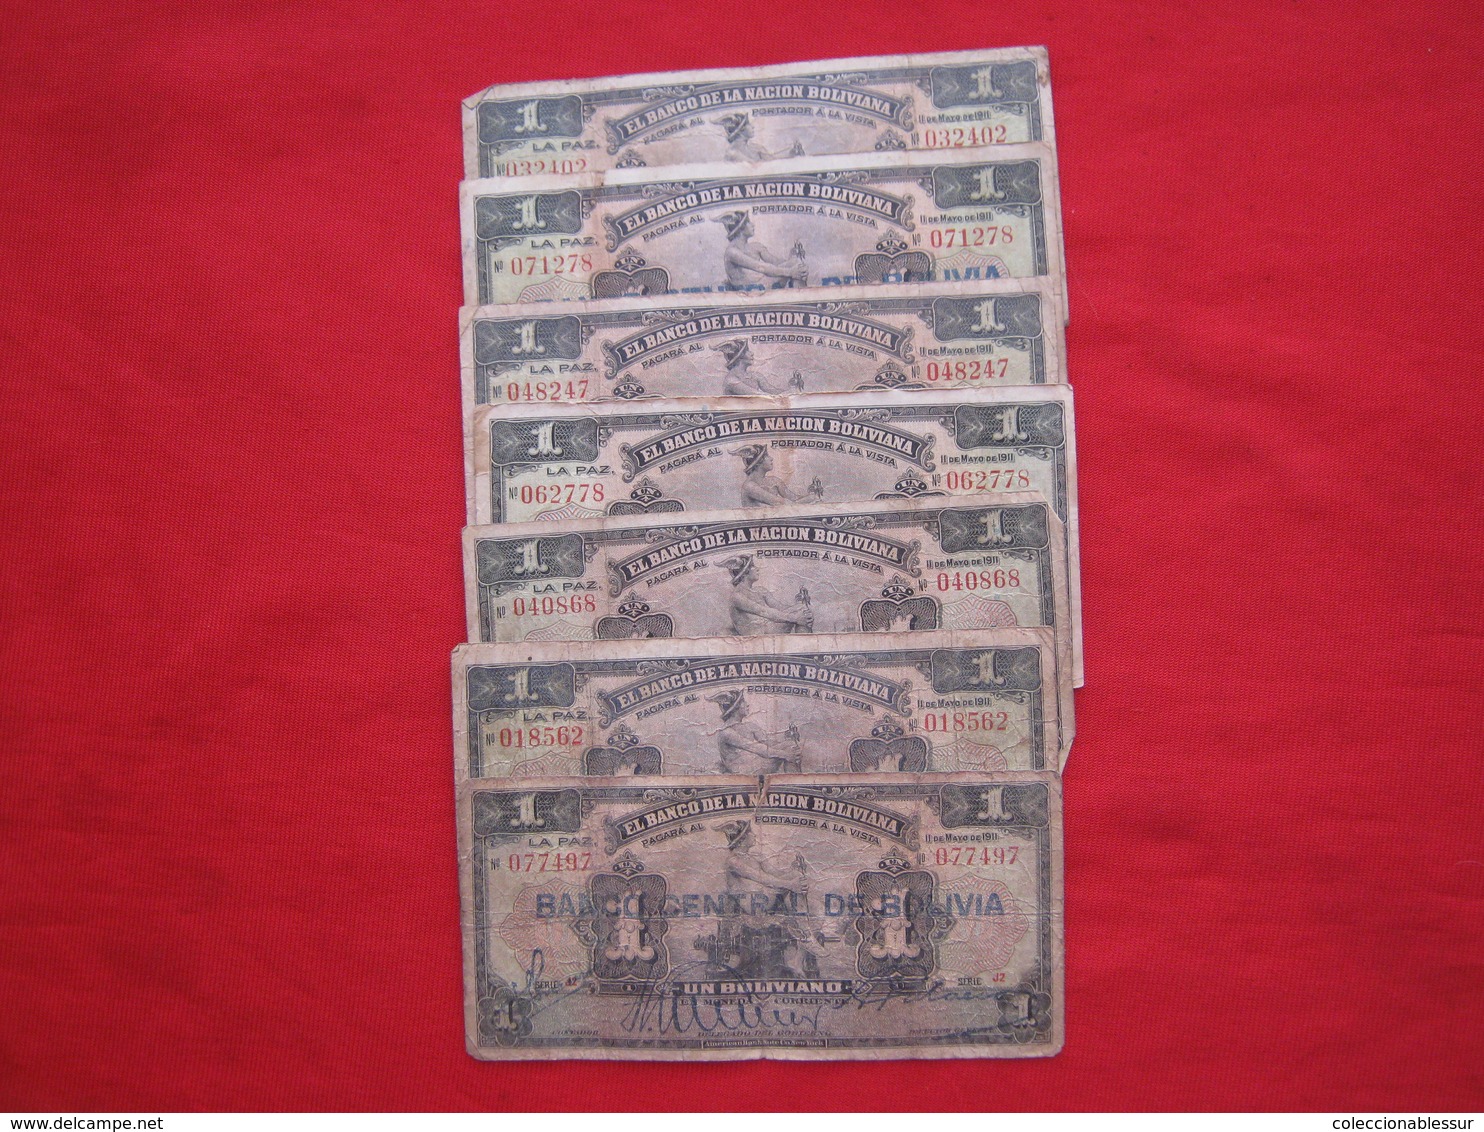 Bolivia Banknotes Lot 200+ - Vrac - Billets